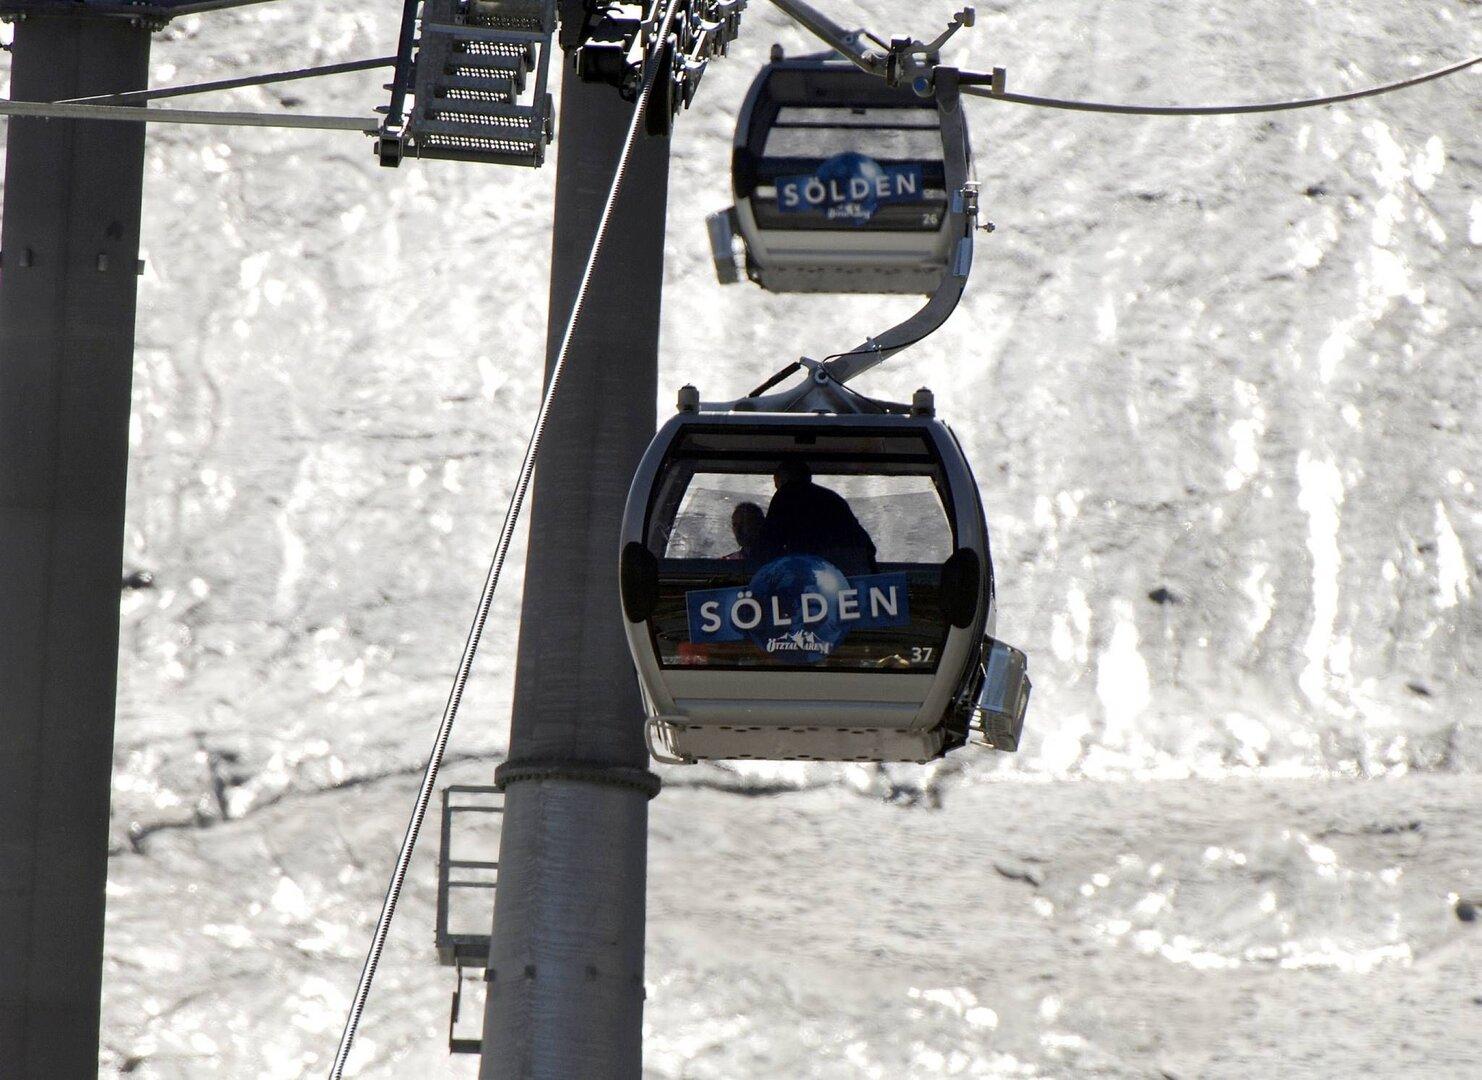 Zwei Verletzte nach Streit zweier Familien in Tiroler Skilift